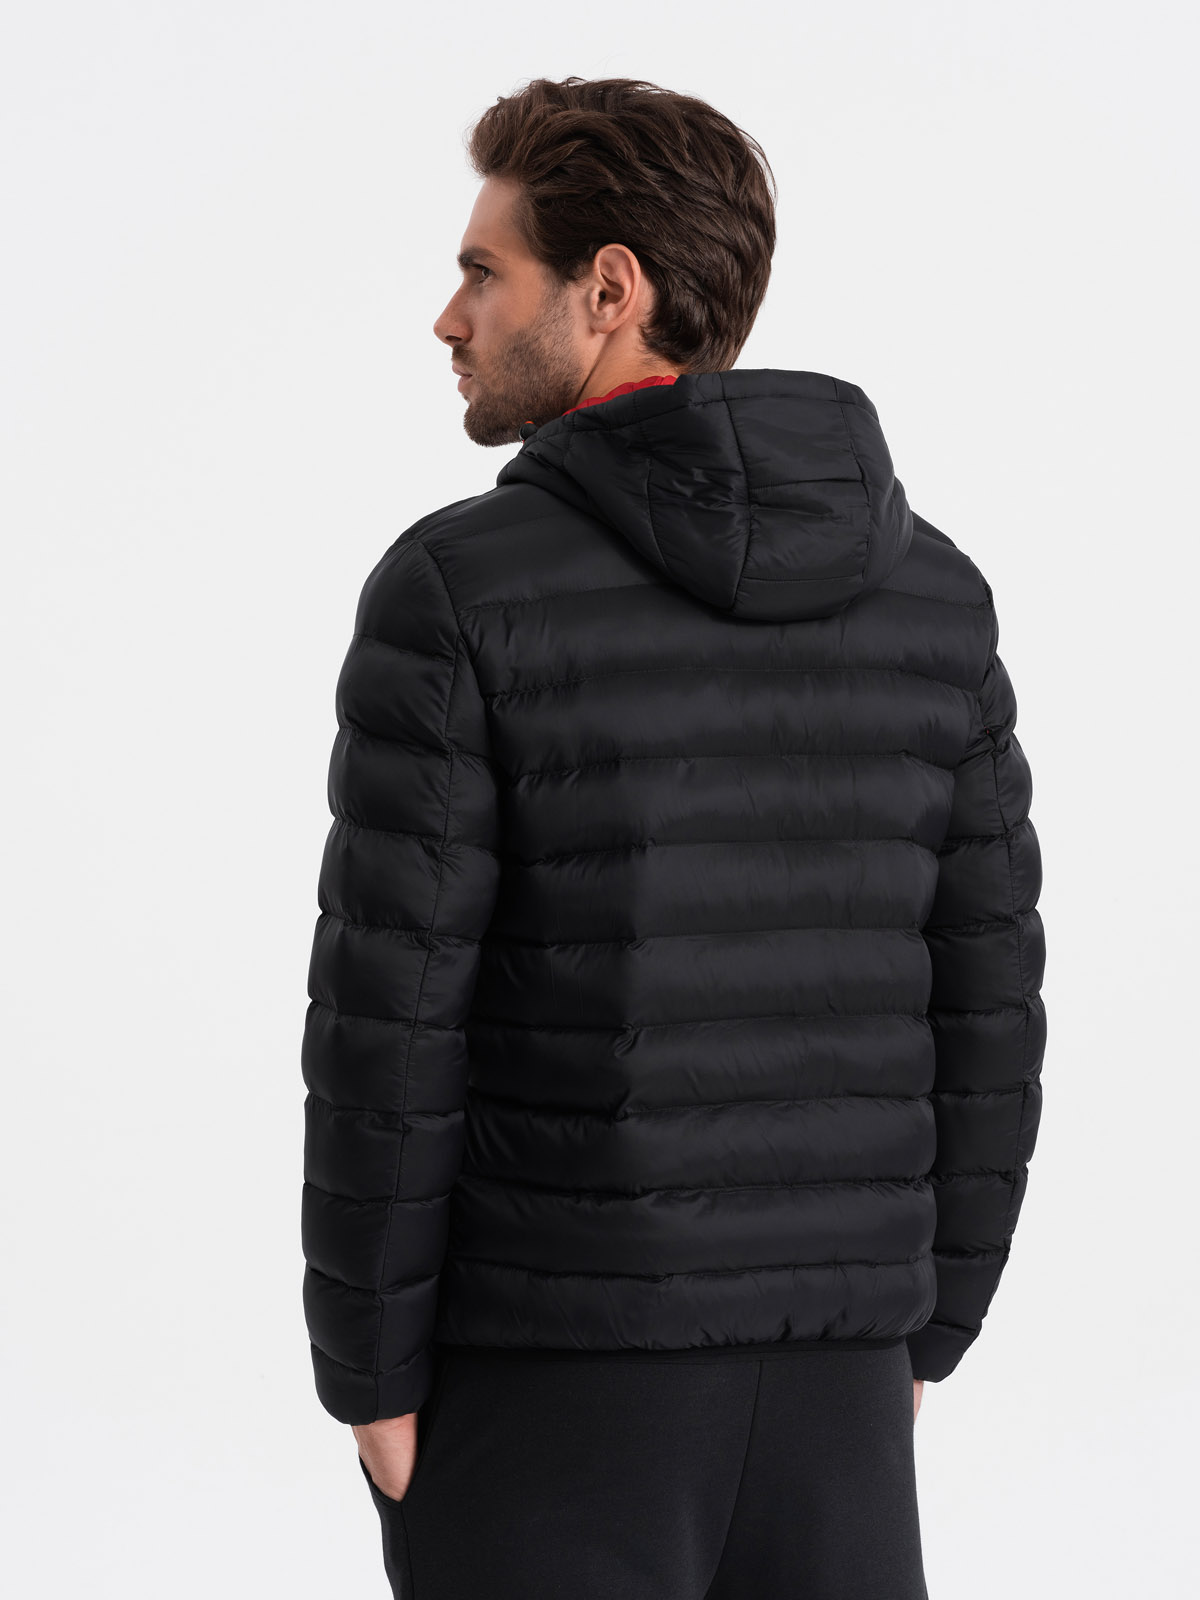 Men's quilted jacket with hood - black V3 OM-JALP-0120 | MODONE ...